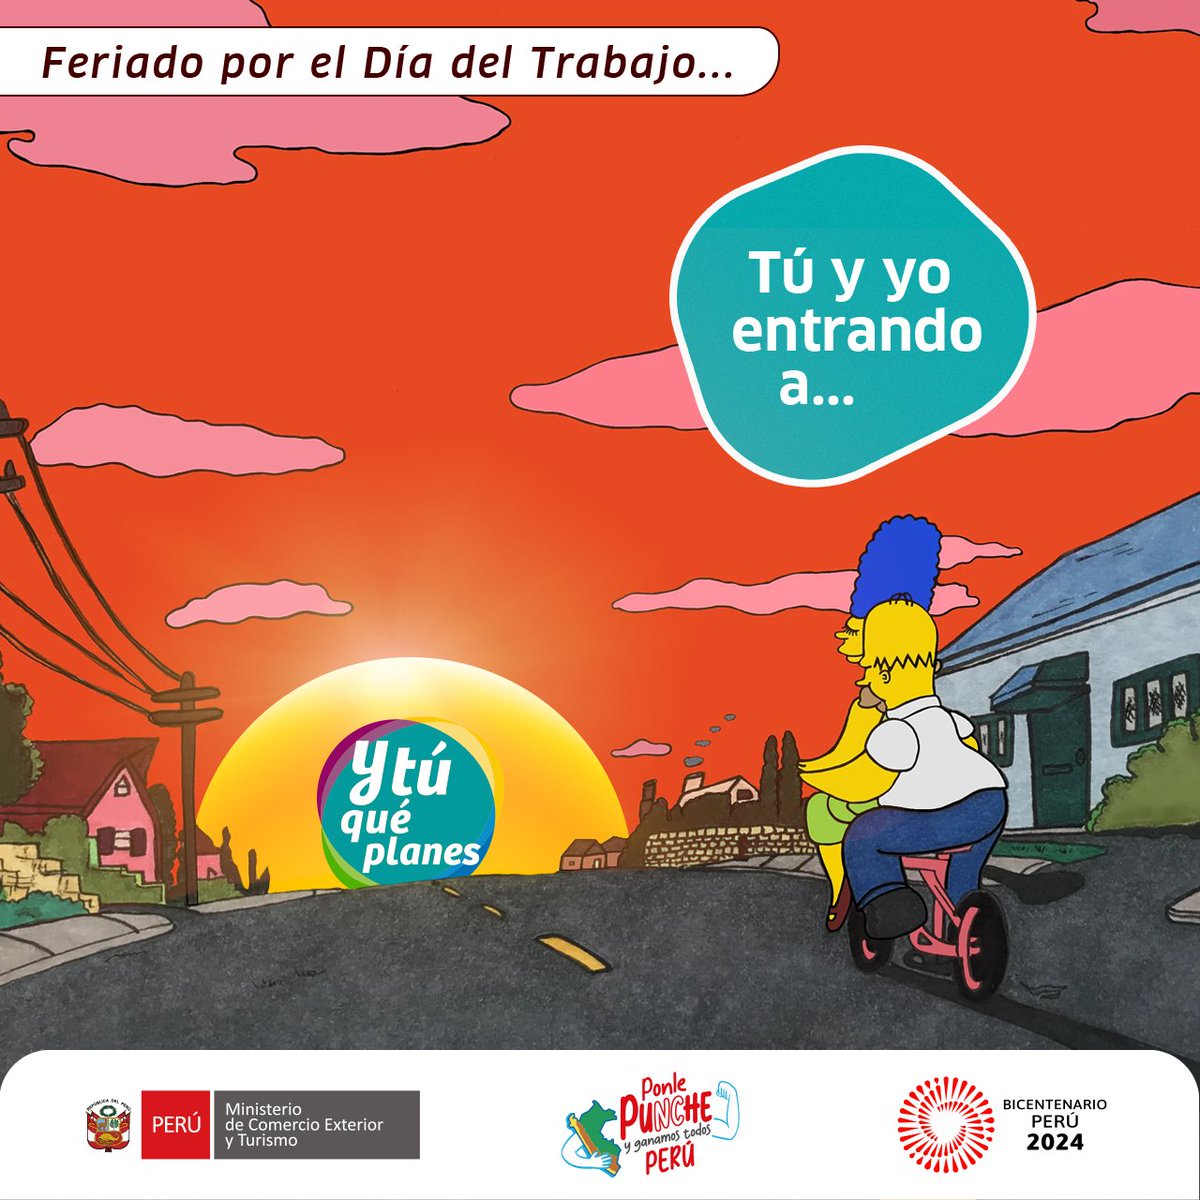 ¡Hay rutas cortas en todo el Perú! Por eso #Mincetur,a través de #Promperú, promocionamos las #RutasCortas que @ConoceelPeru tiene para ti 👉 ytuqueplanes.com/rutas-cortas/l…. 🚌🚗🇵🇪✨